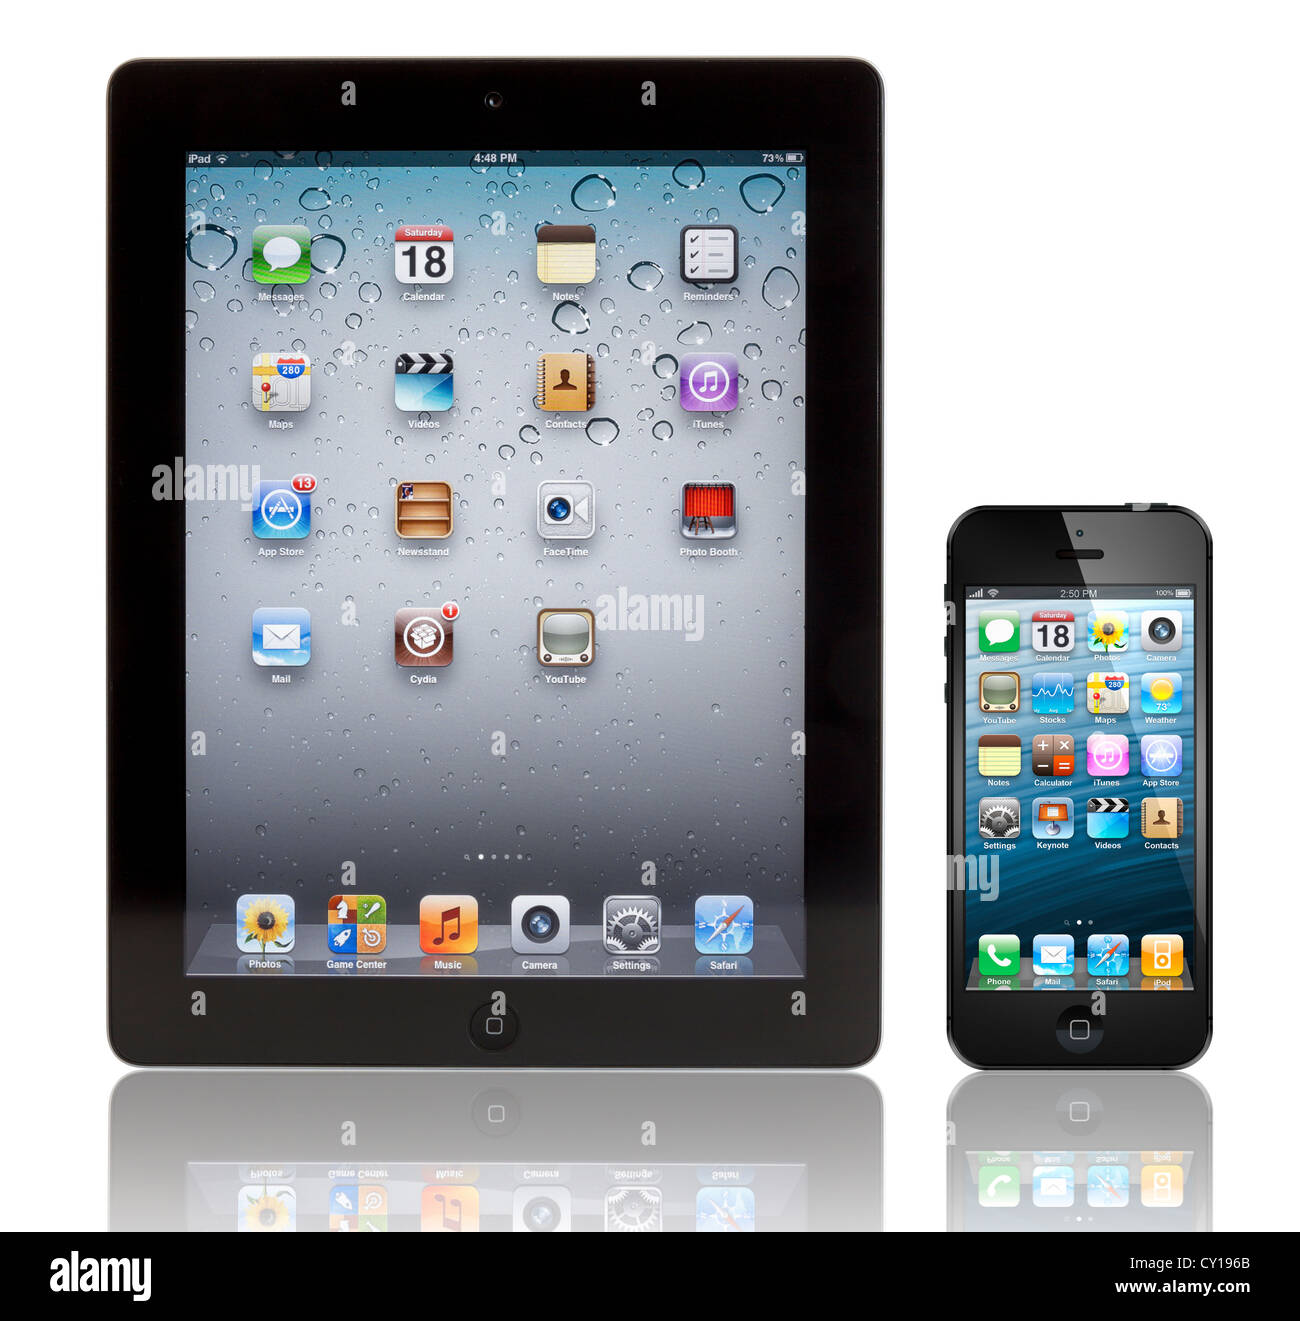 Ein schwarzes Apple iPhone 5 vor einem schwarzen Apple iPad 3 Tablet. Beide Geräte zeigen die Homepage. Stockfoto